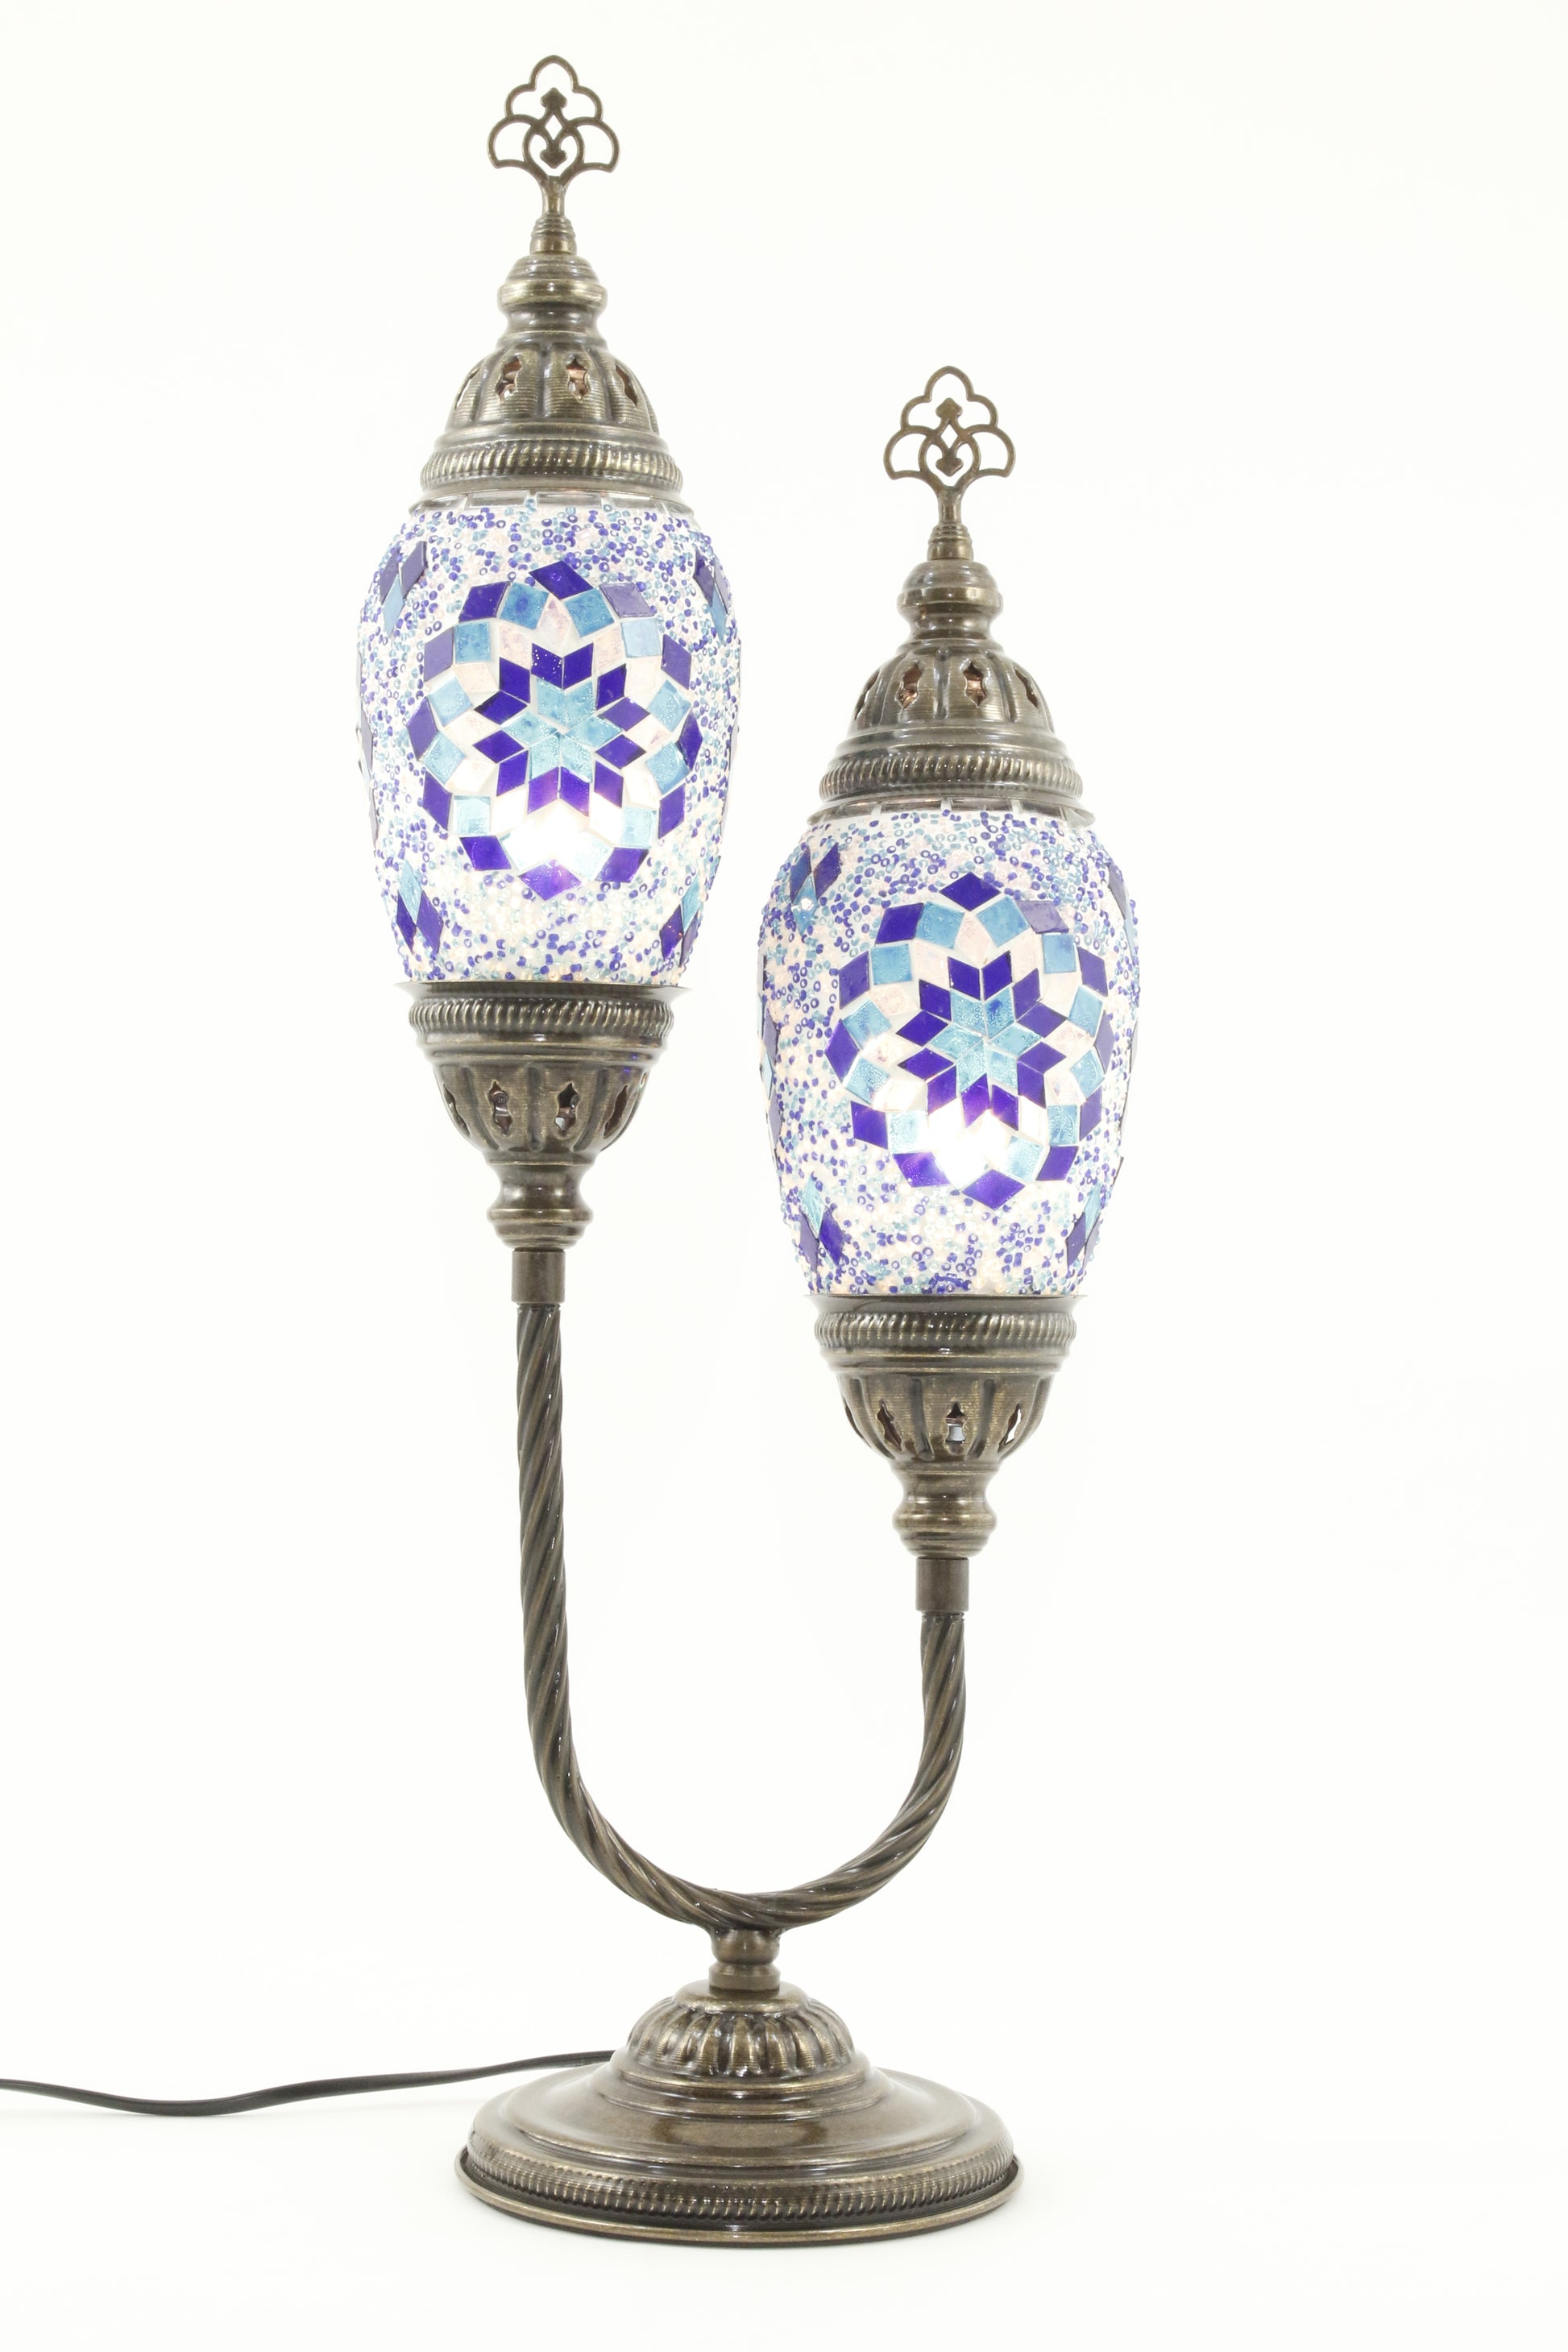 DOUBLE HORSESHOE EGG SHAPED TURKISH MOSAIC TABLE LAMP BLUE -TURNED ON